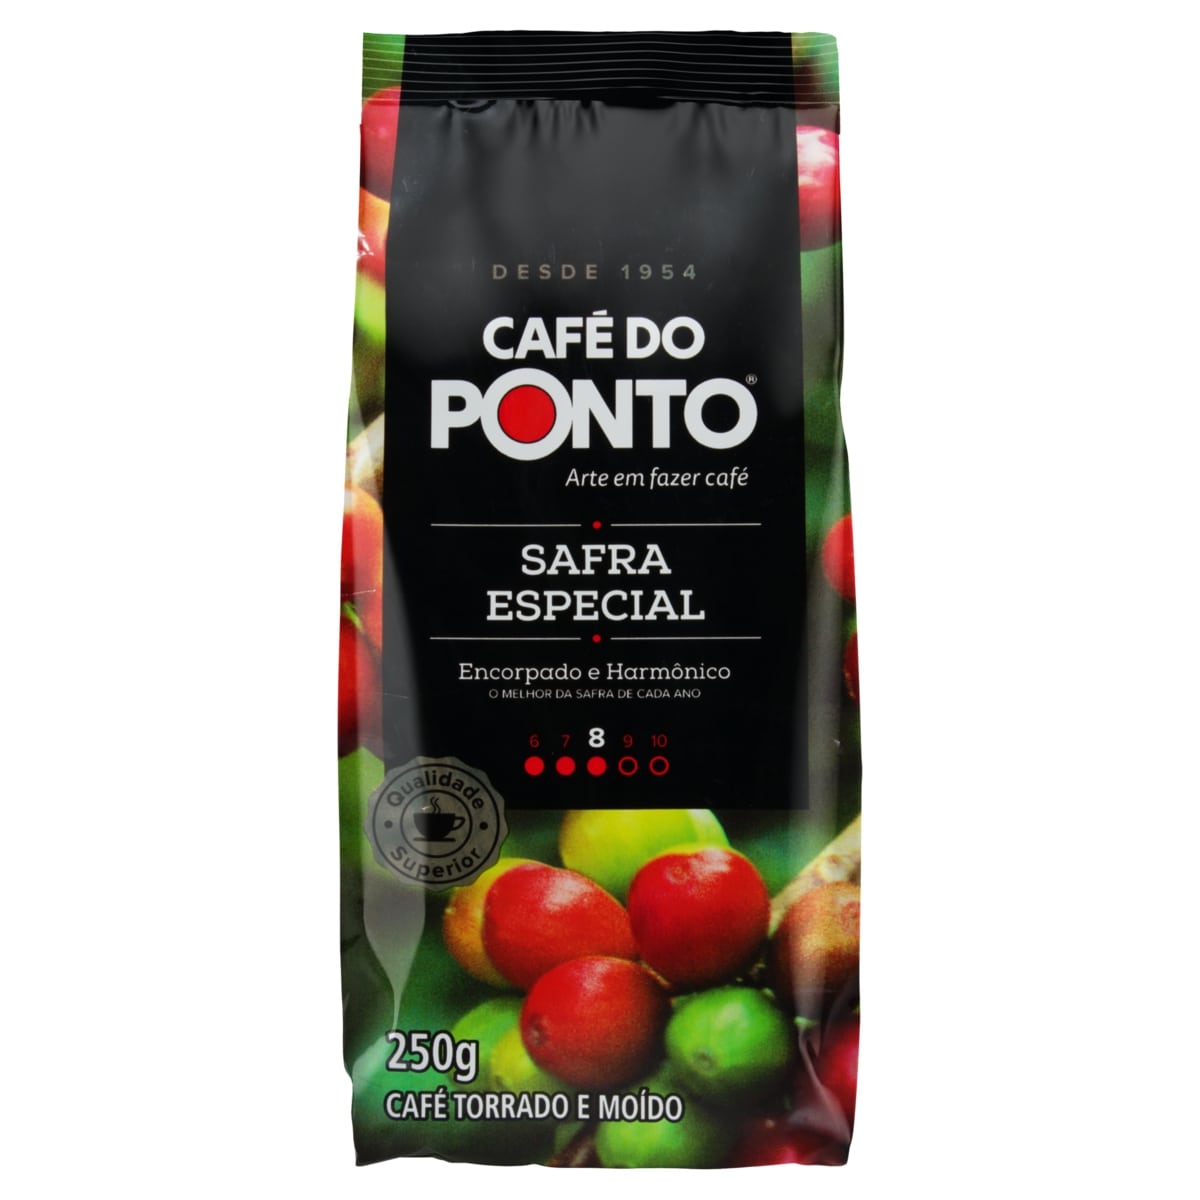 CAFÉ DO PONTO SAFRA ESPECIAL 250G                                                                   